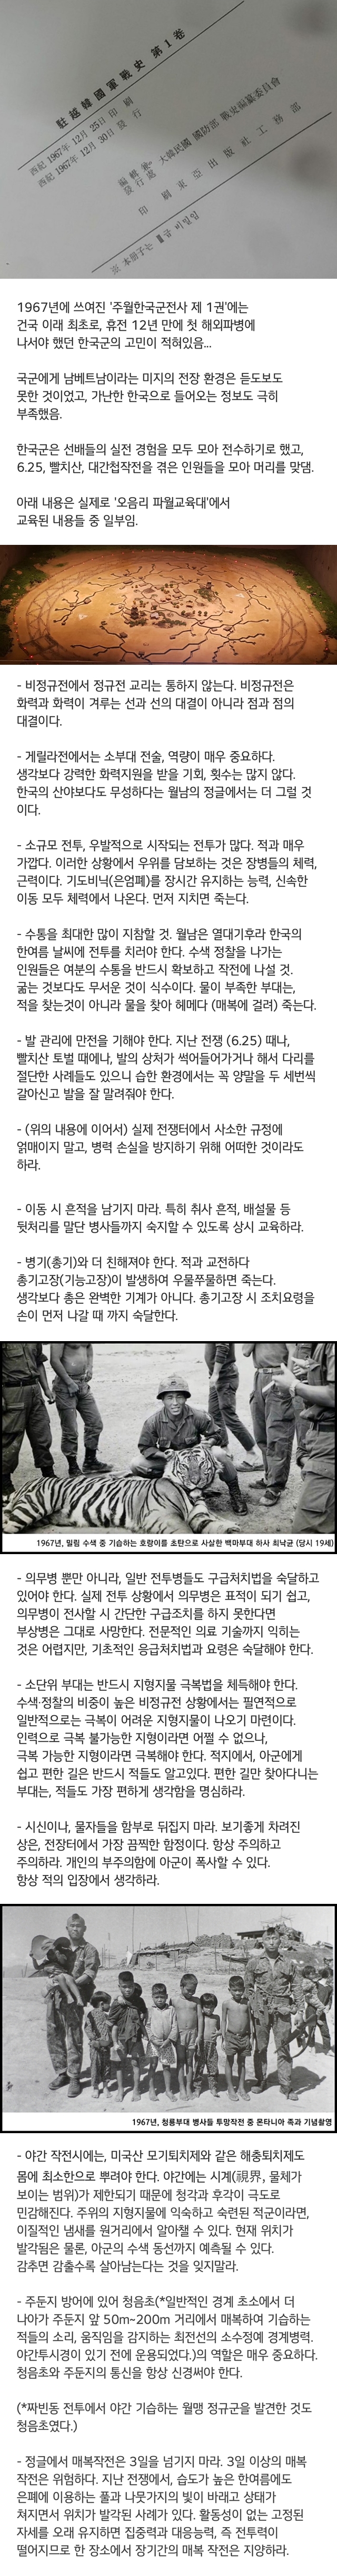 첫 파병... 한국 병사들이 받았던 교육...jpg